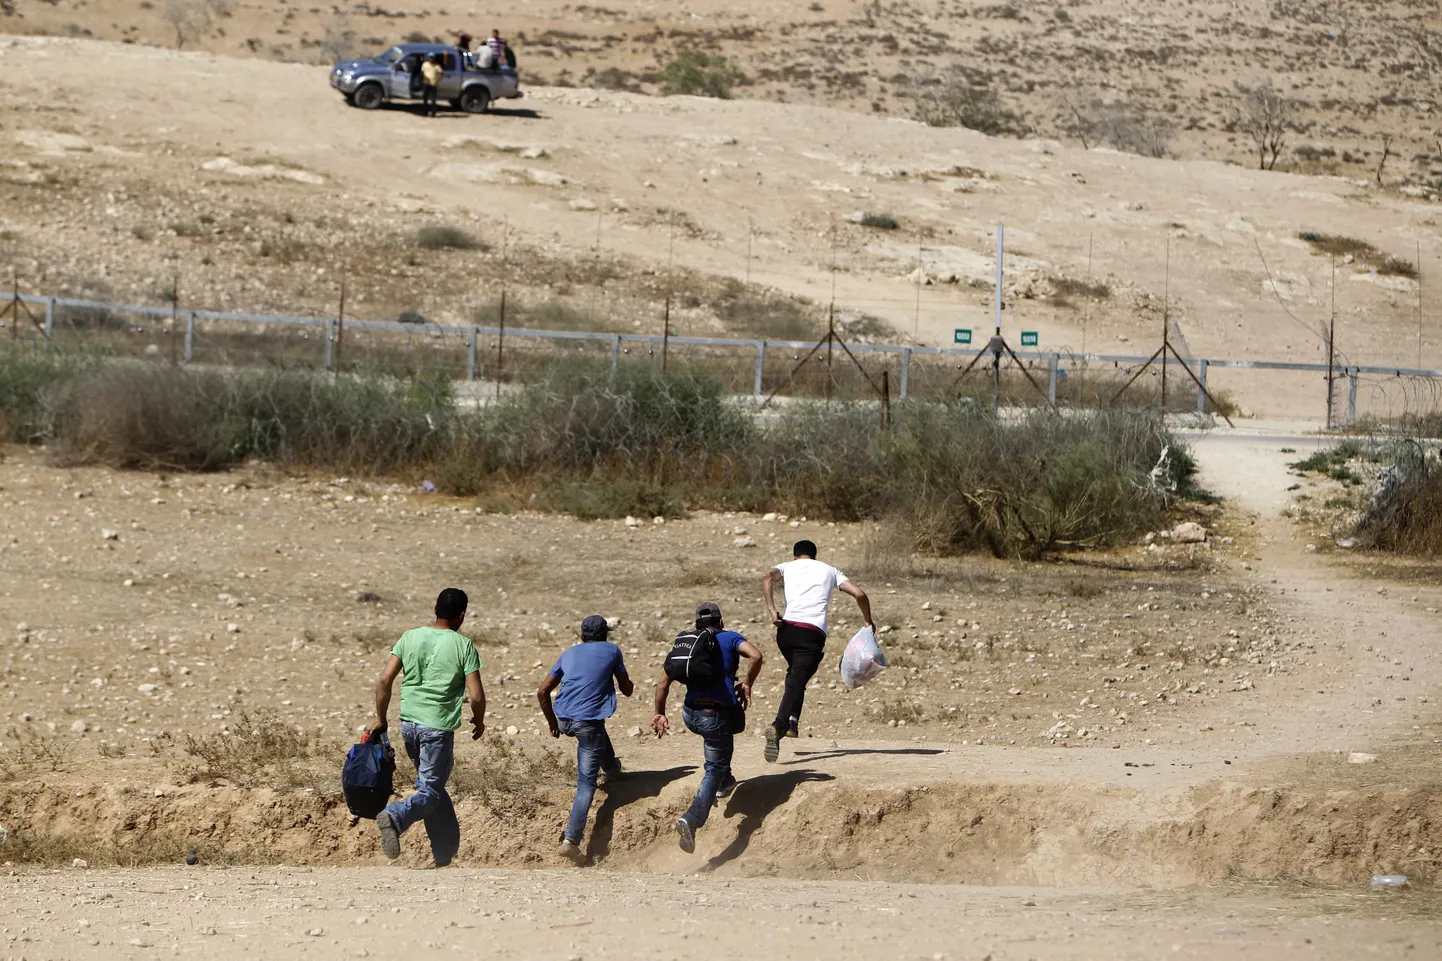 Палестинцы с Восточного берега, не имеющие официального разрешения на работу в Израиле, каждый день вынуждены нелегально прорываться через разделительный барьер. Но они готовы рисковать.